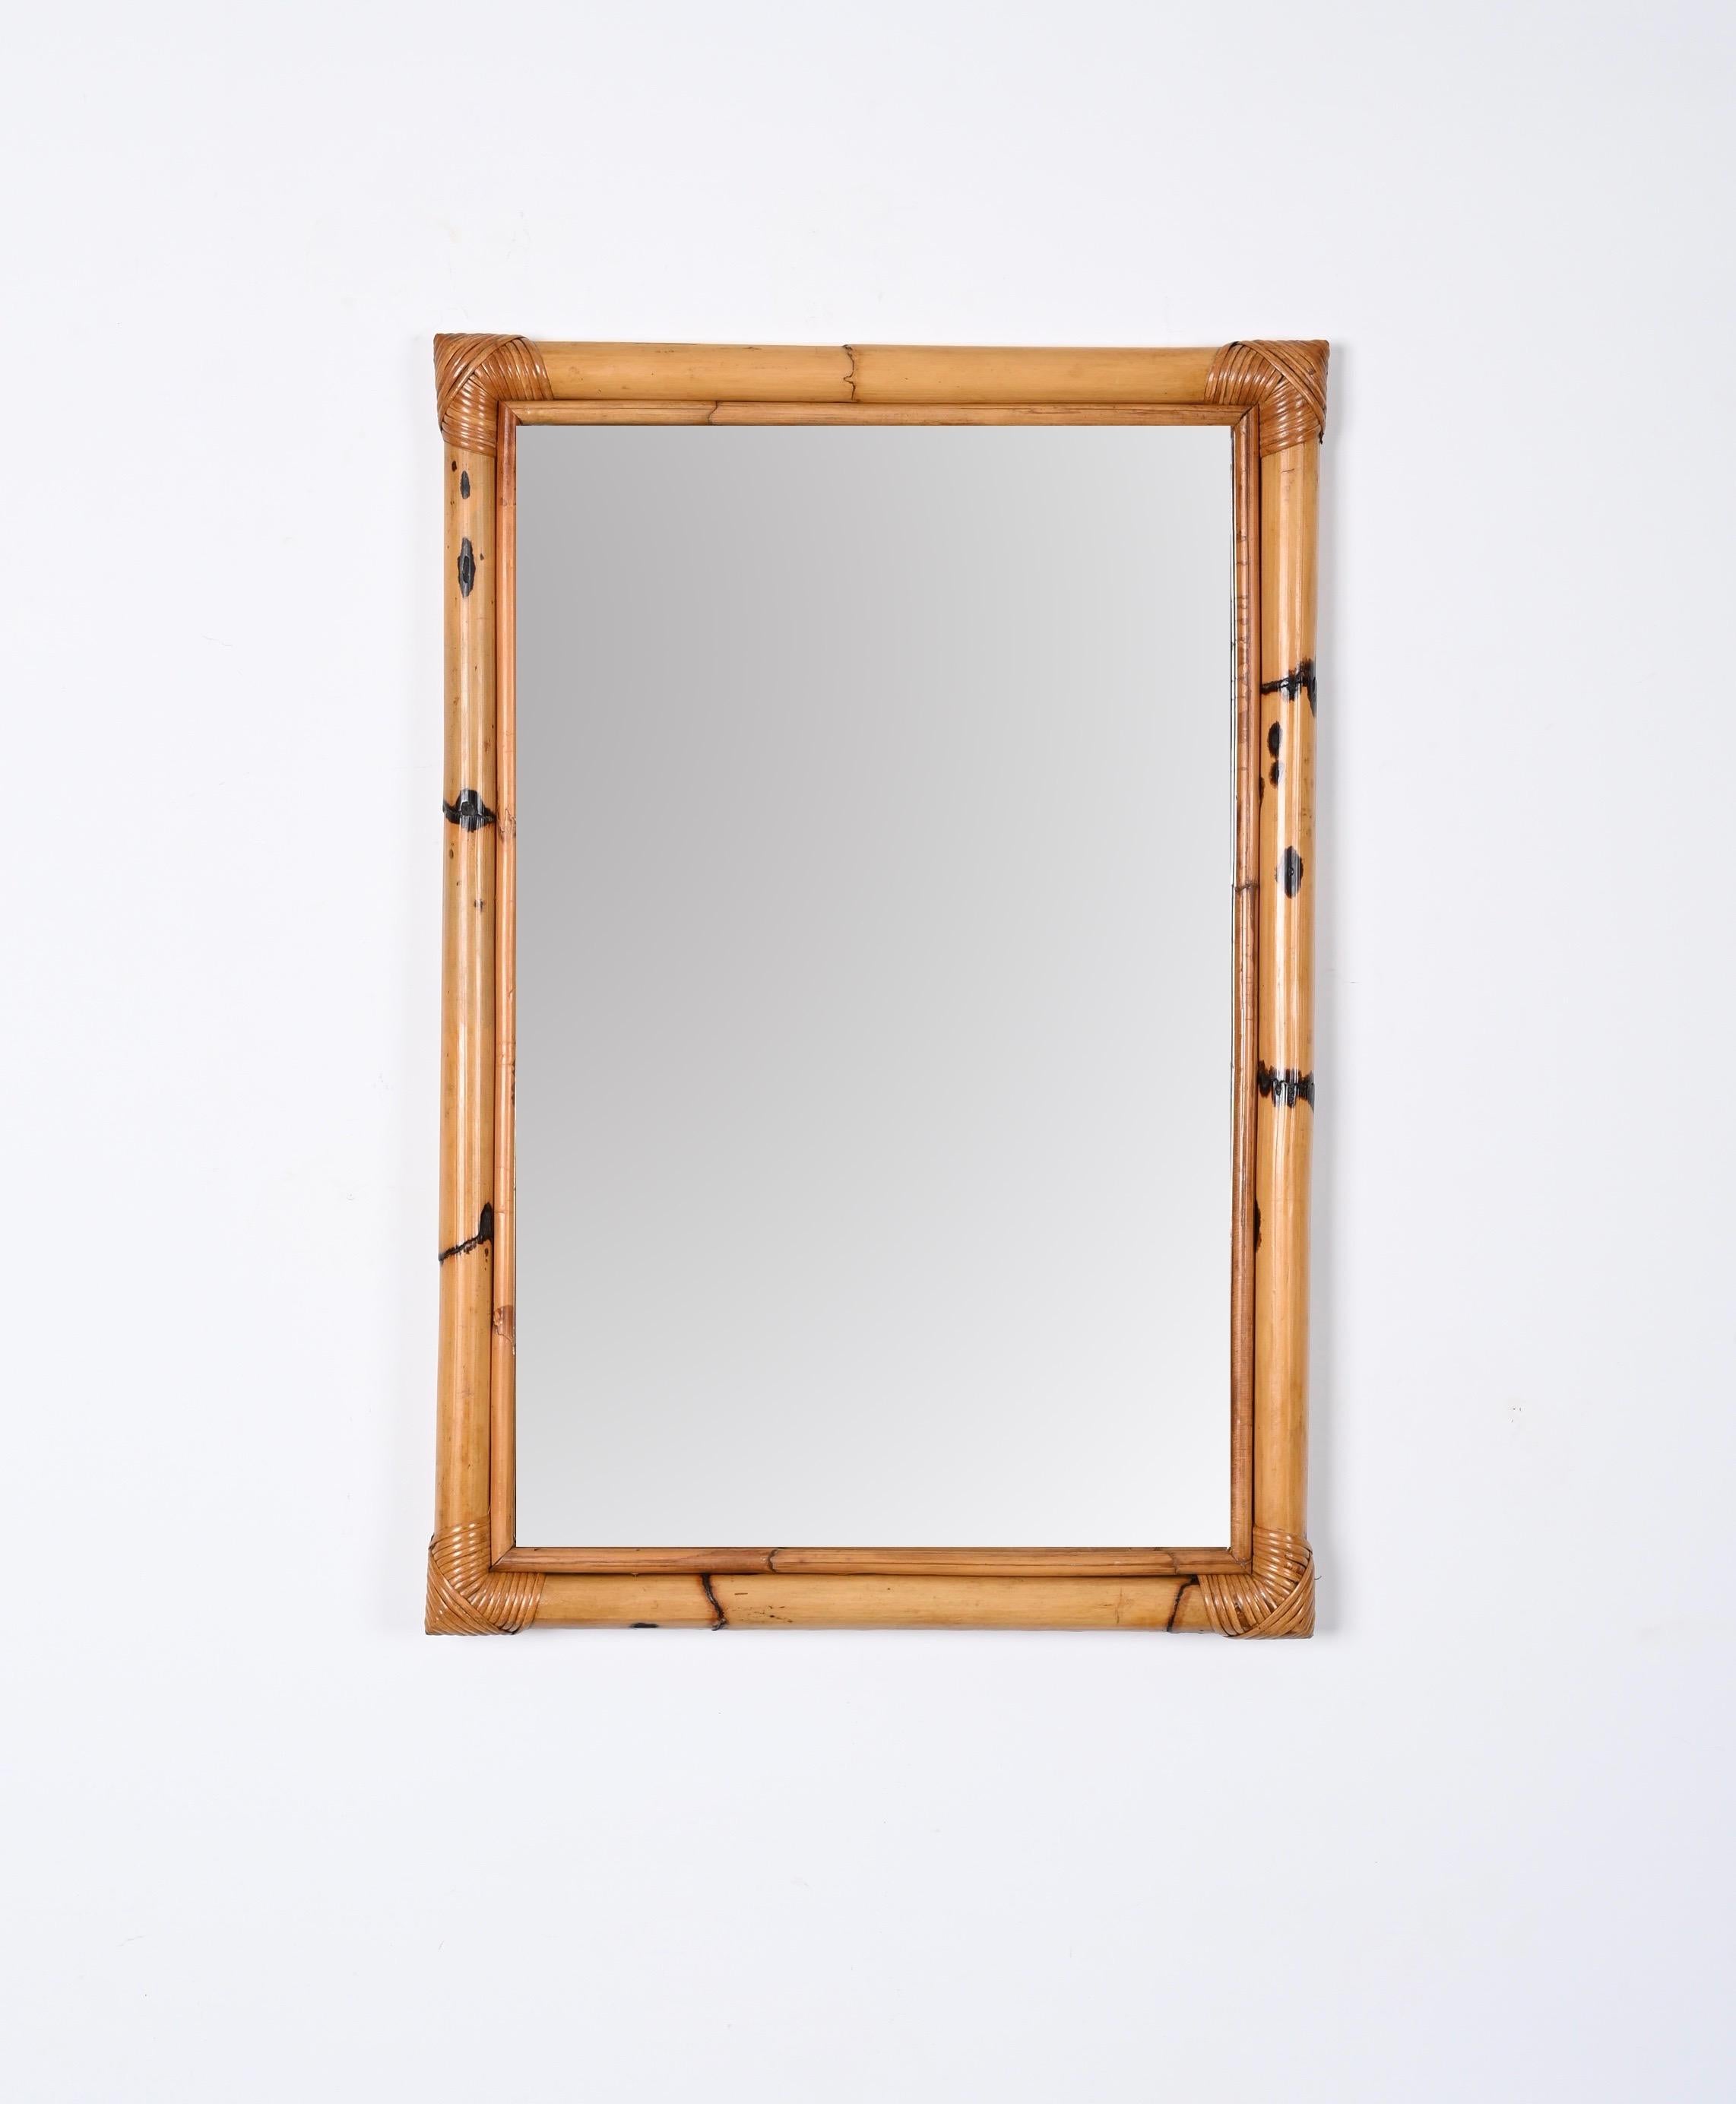 Rechteckiger Spiegel mit doppeltem Rahmen aus Bambus und Rattan, Italien 1970er Jahre (20. Jahrhundert)